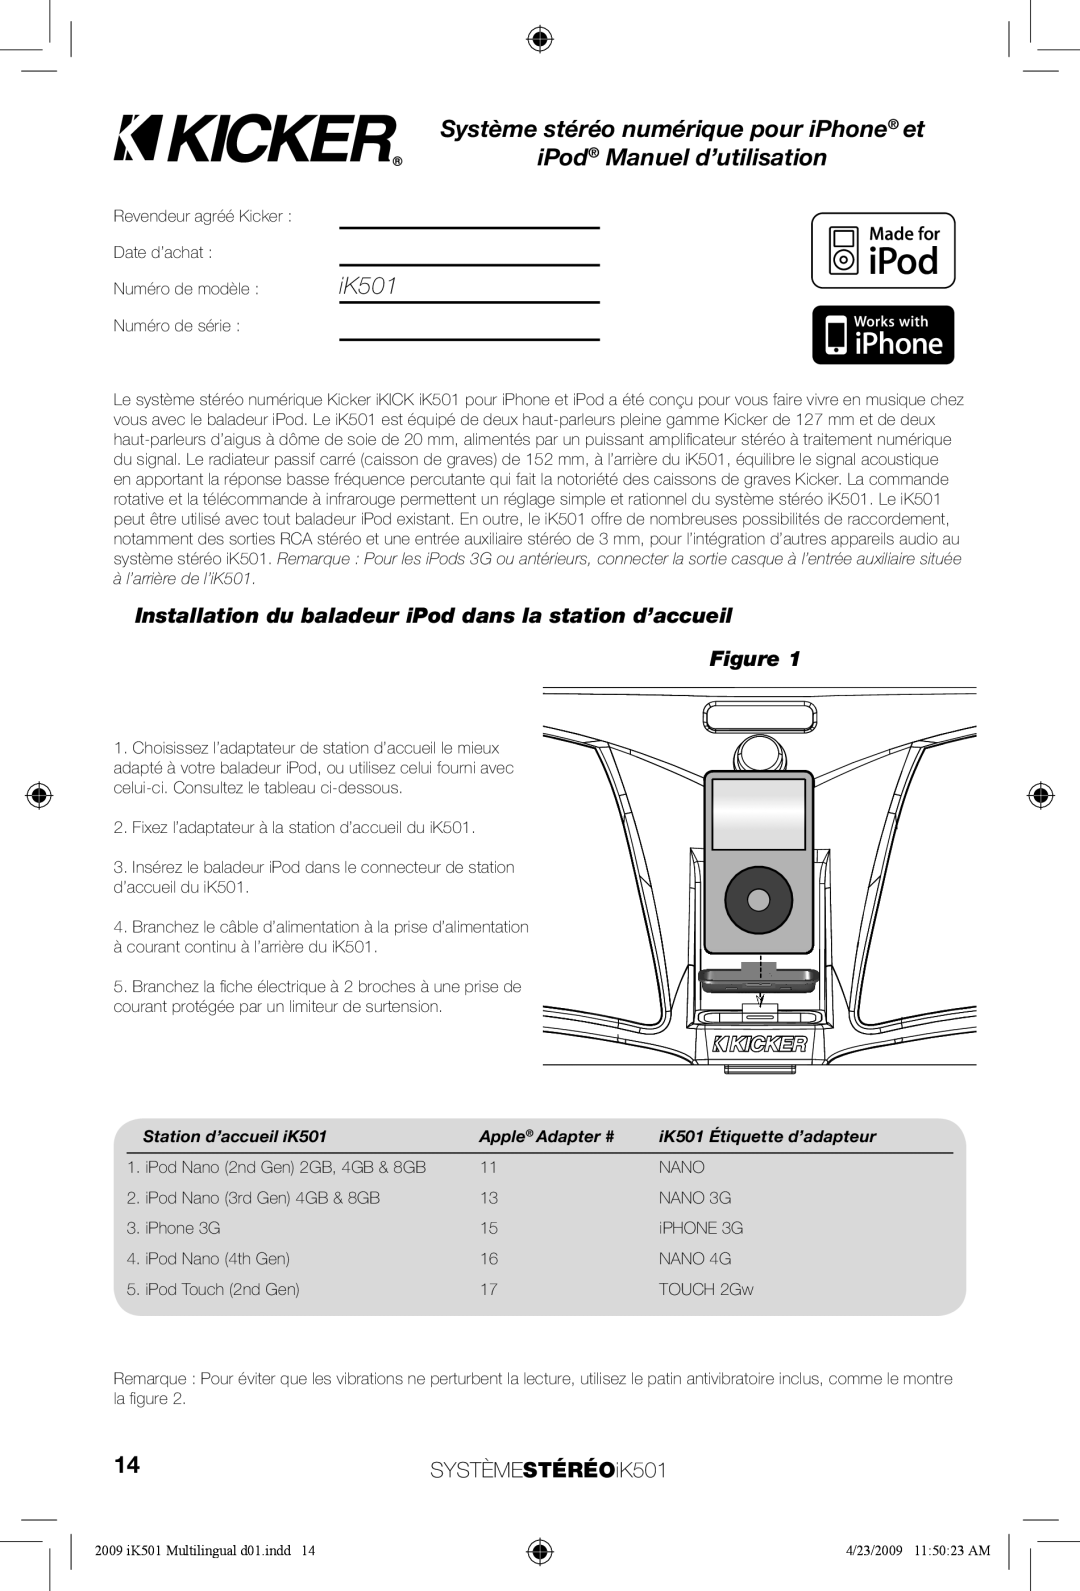 Kicker Système stéréo numérique pour iPhone et, iPod Manuel d’utilisation, SYSTÈMESTÉRÉOiK501, Station d’accueil iK501 